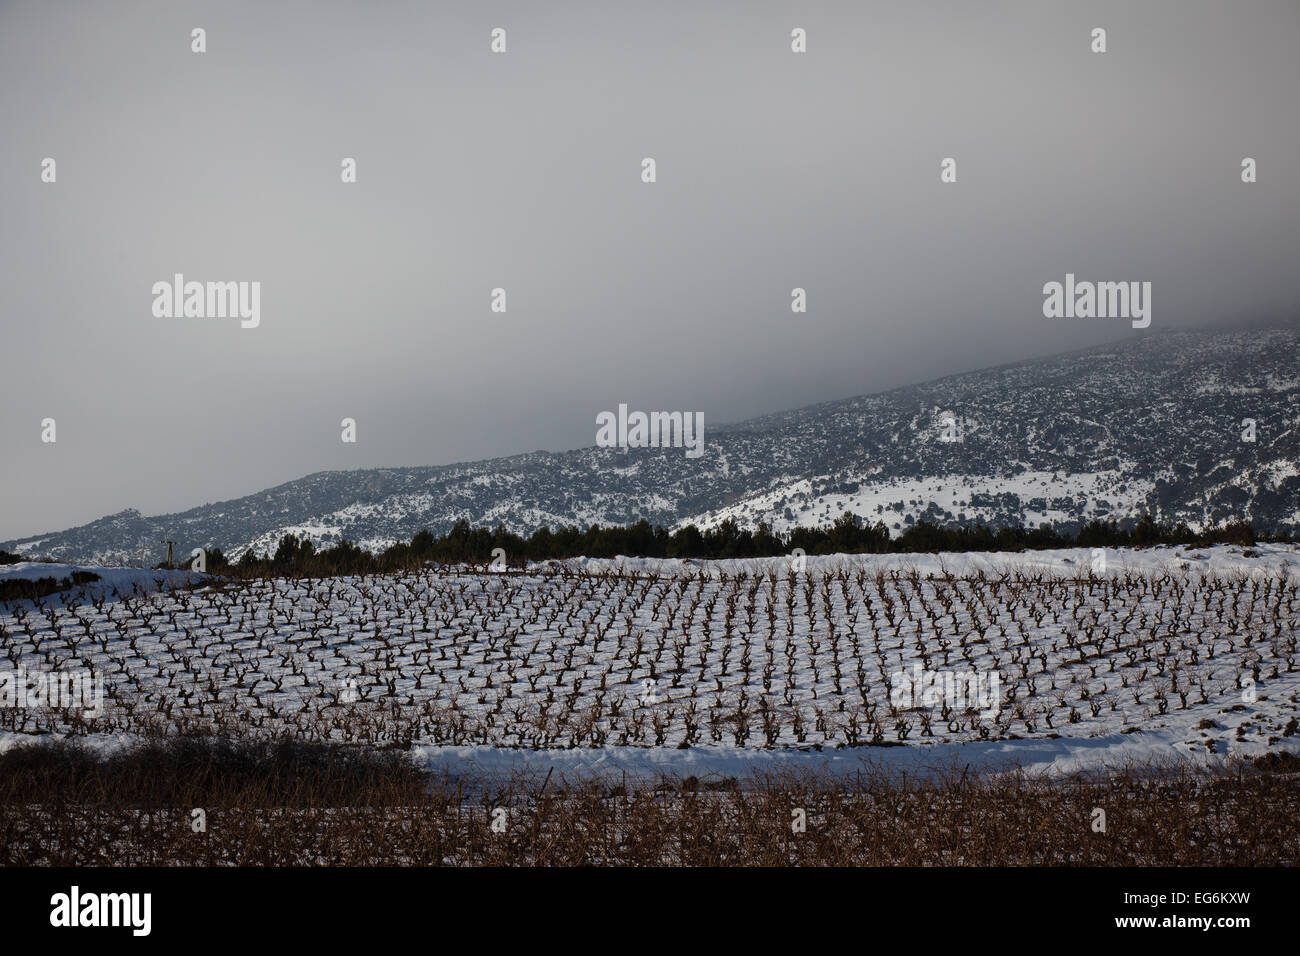 8/2/15 Les vignobles de La Rioja, près de Samaniego, Alava, Pays Basque, Espagne. Photo de James Sturcke. Banque D'Images